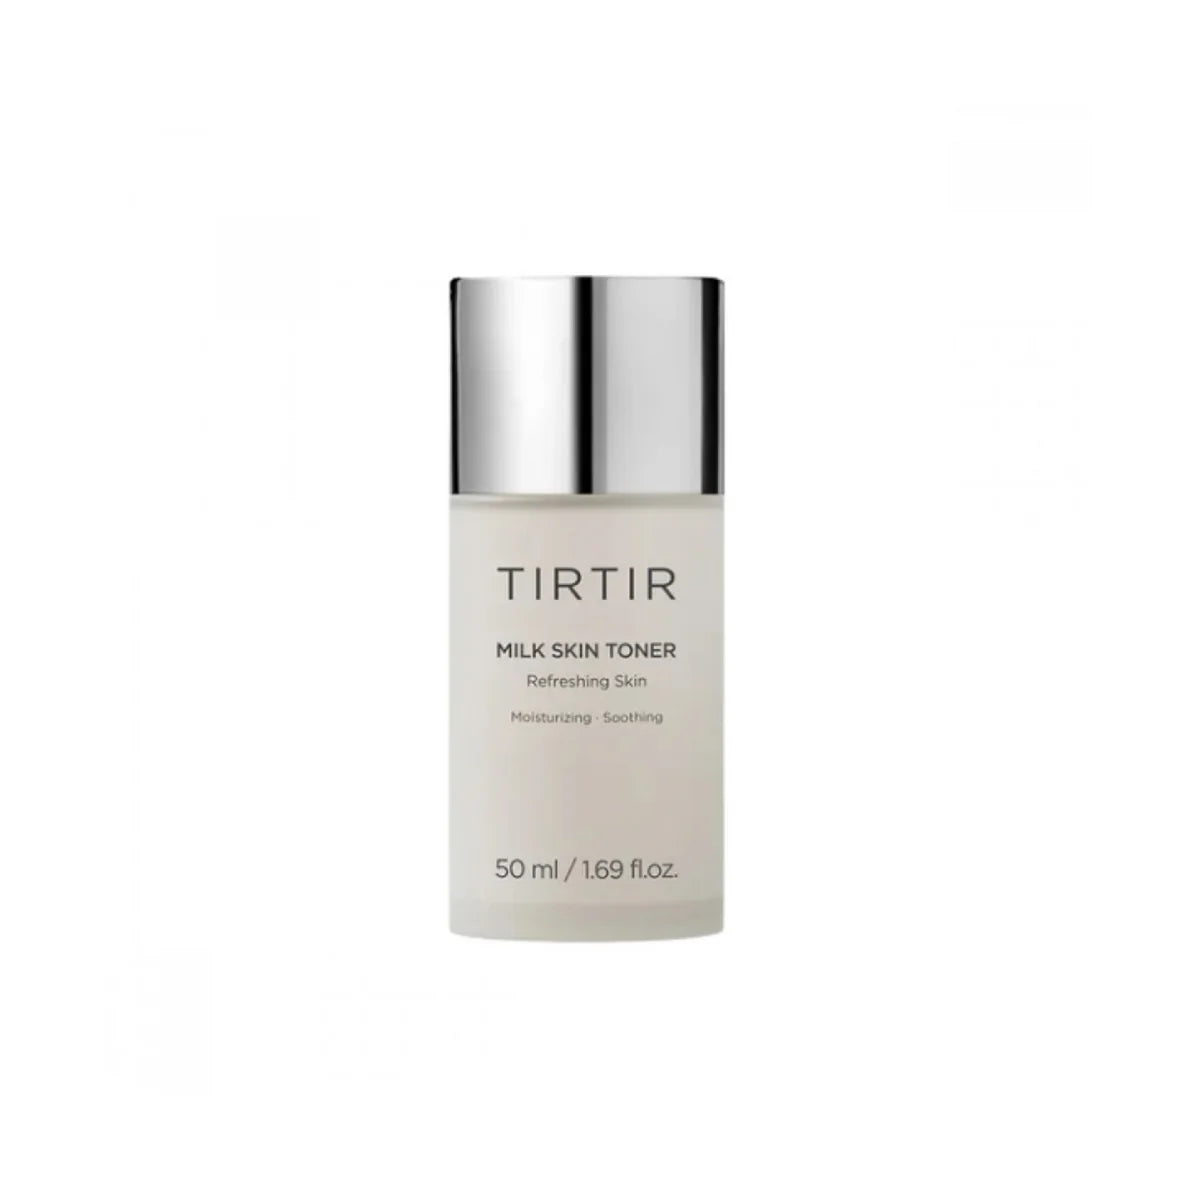 TIRTIR Milk Skin Toner